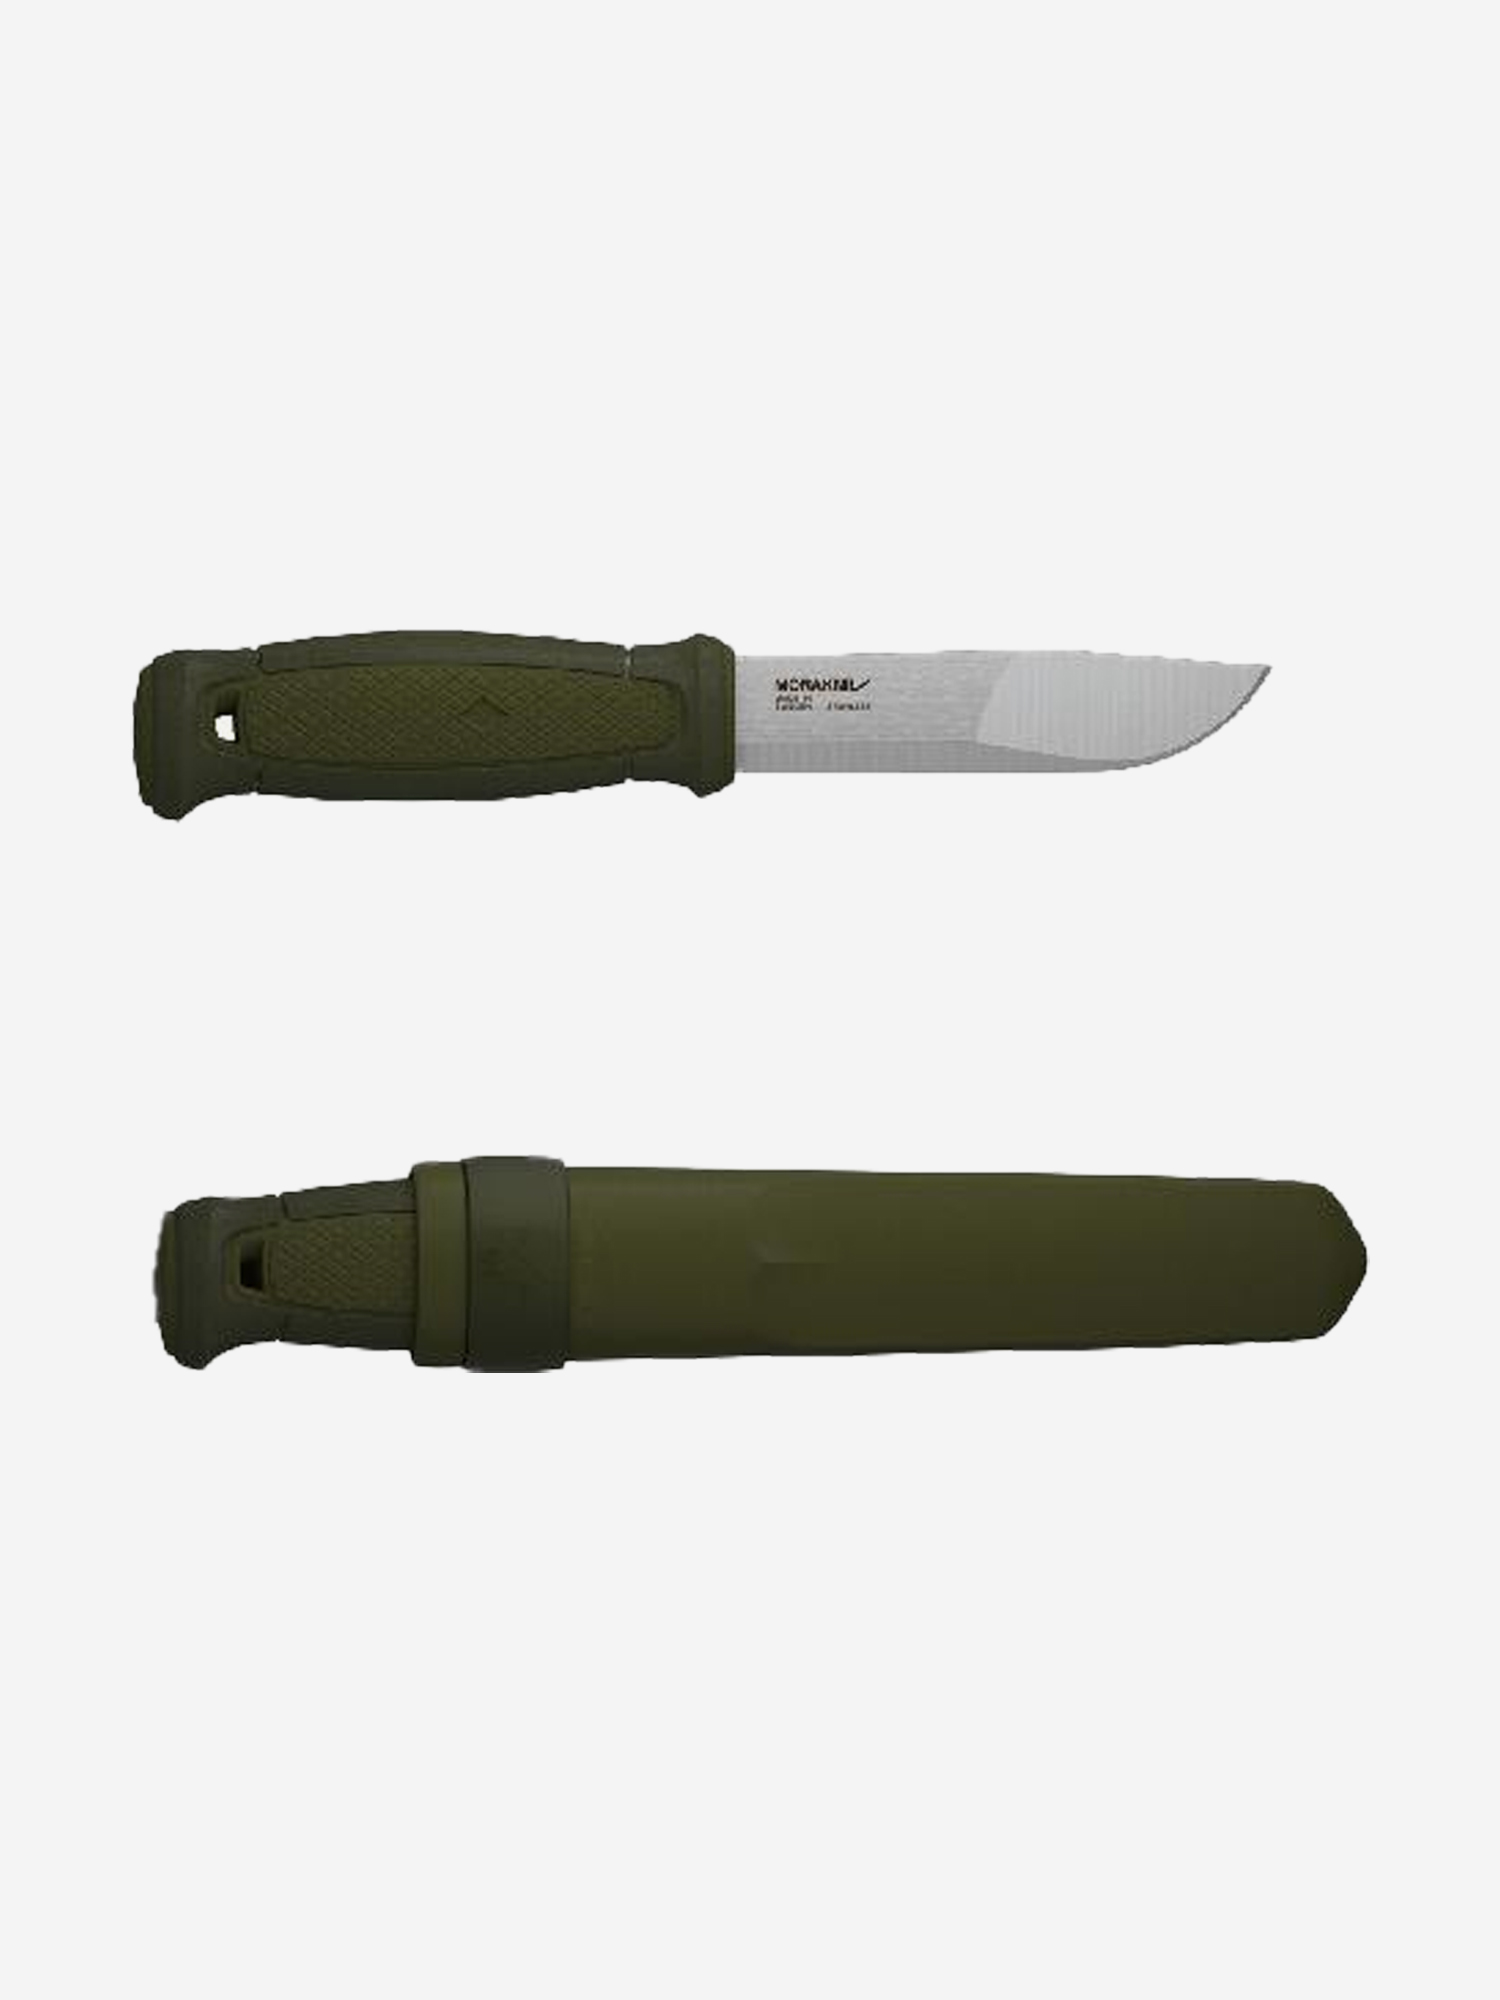 Нож Morakniv Kansbol, нержавеющая сталь, прорезиненная ручка, цвет зеленый+ножны, 12634, Зеленый нож morakniv kansbol нержавеющая сталь прорезиненная ручка зеленый ножны 12634 зеленый